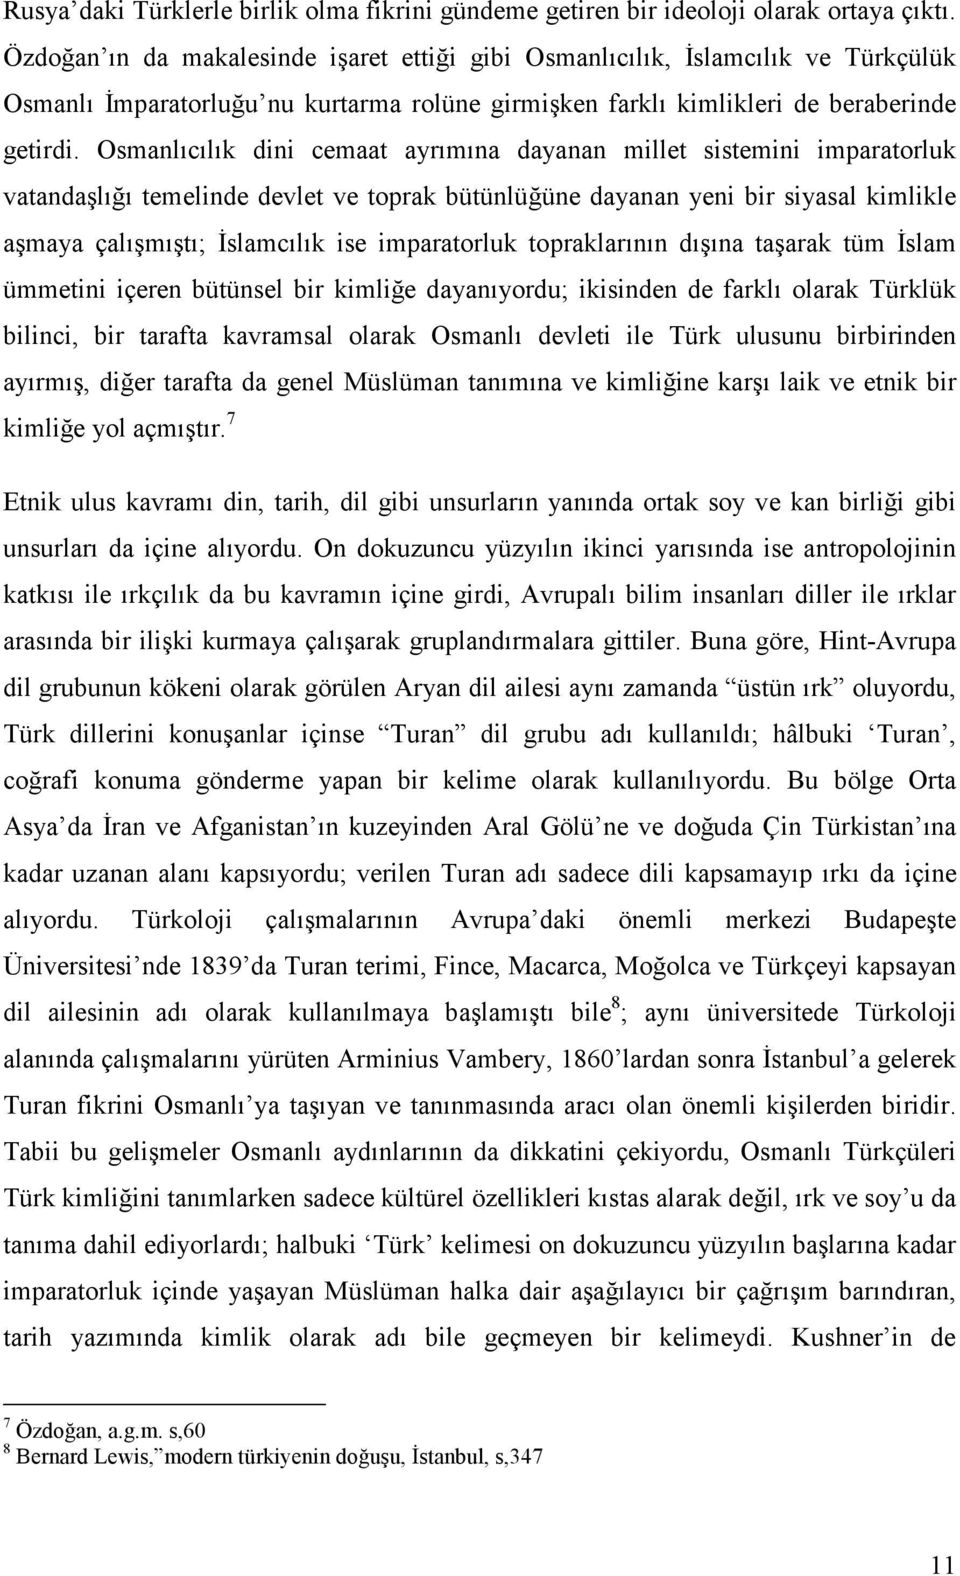 Osmanlıcılık dini cemaat ayrımına dayanan millet sistemini imparatorluk vatandaşlığı temelinde devlet ve toprak bütünlüğüne dayanan yeni bir siyasal kimlikle aşmaya çalışmıştı; Đslamcılık ise